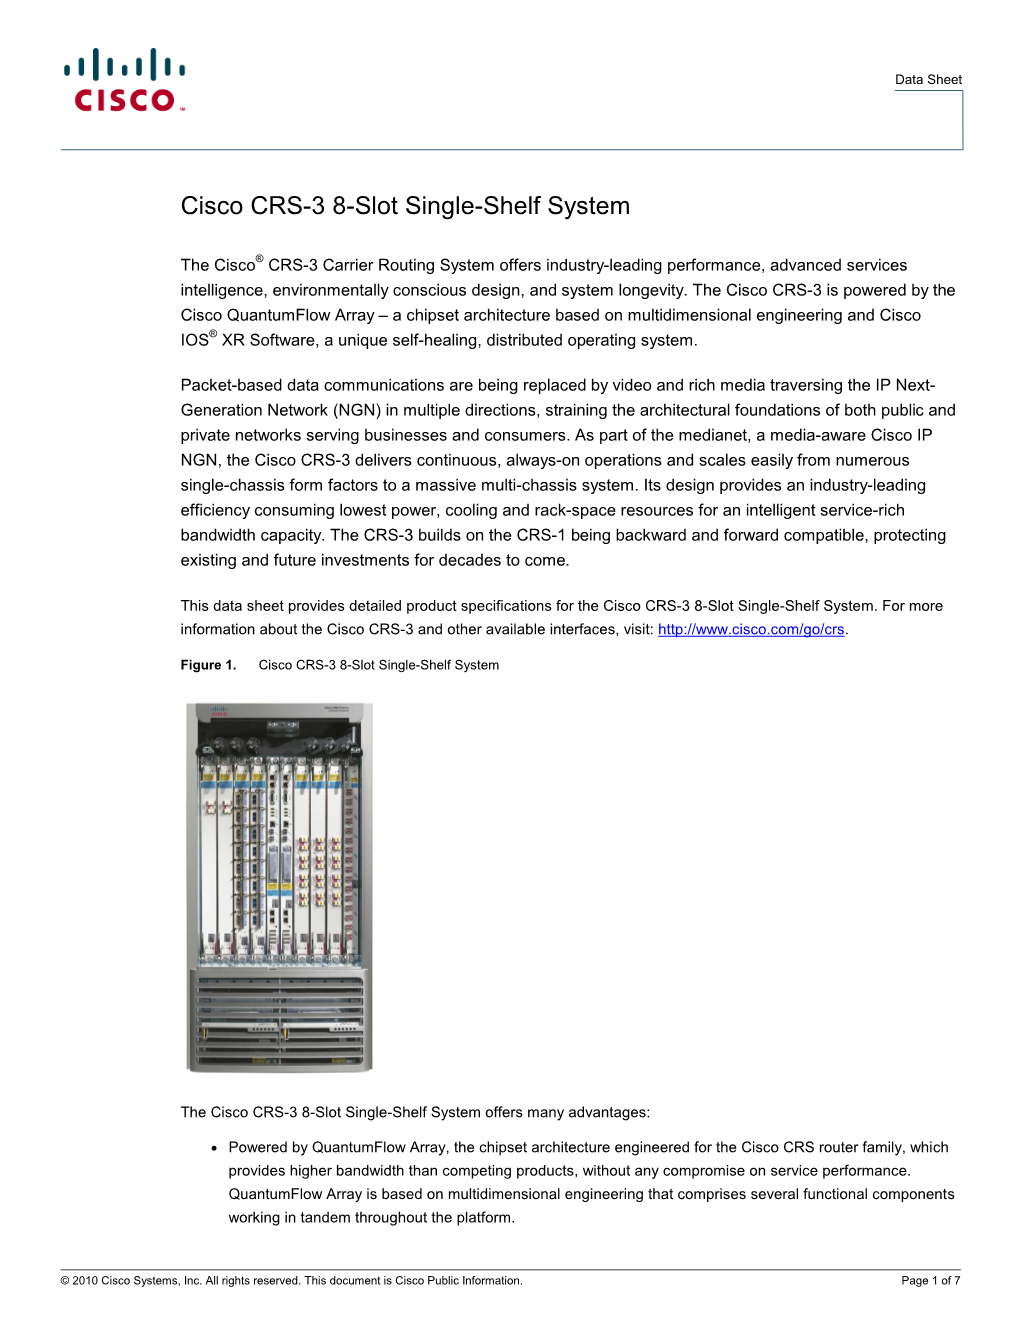 Cisco CRS-3 8-Slot Single-Shelf System